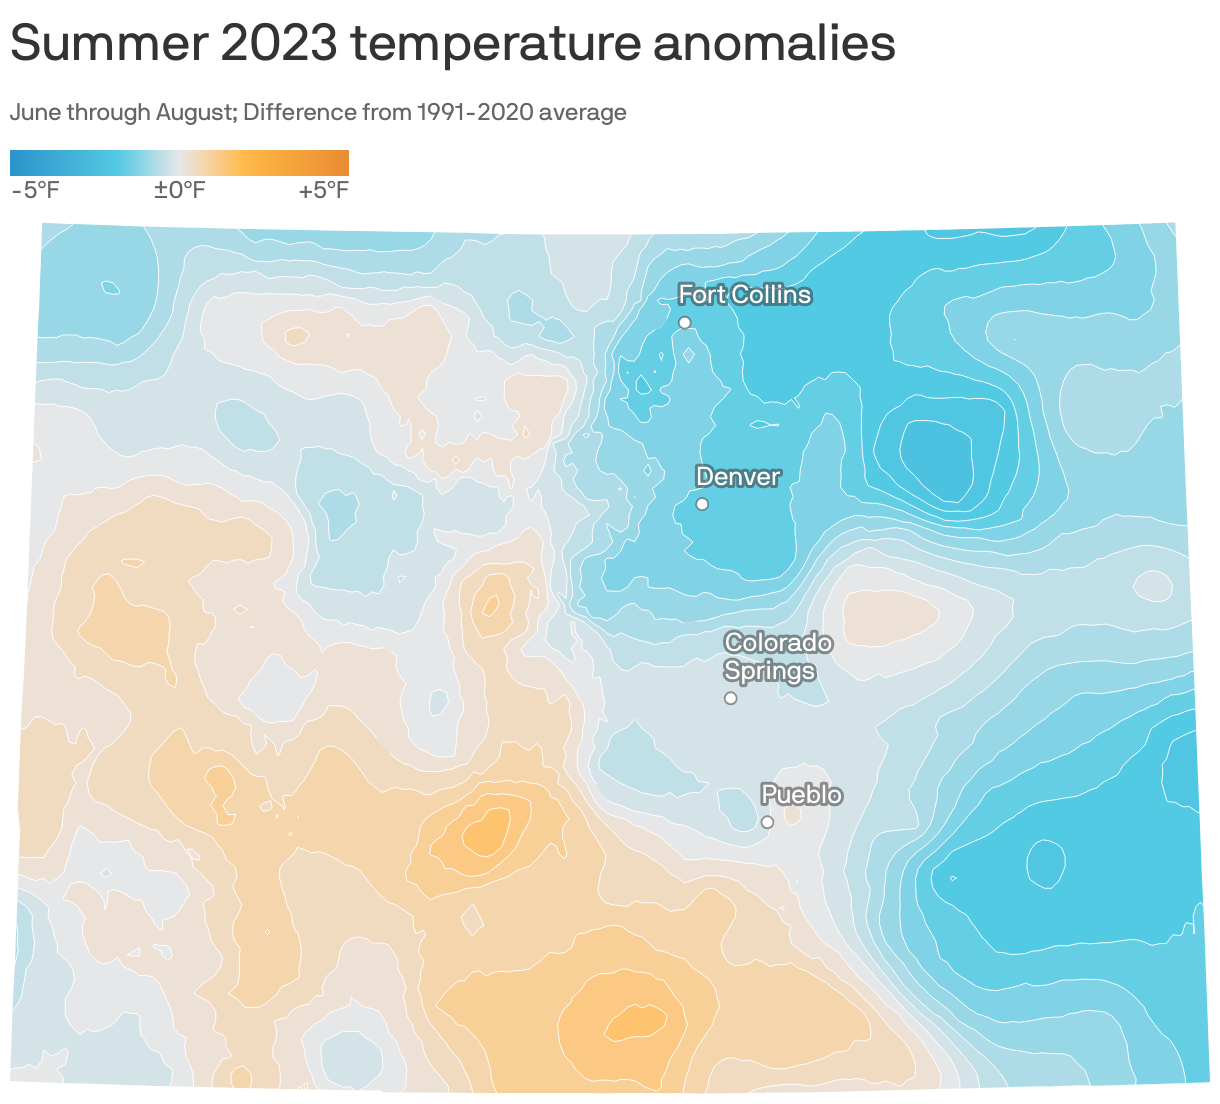 Summer 2023 temperature anomalies